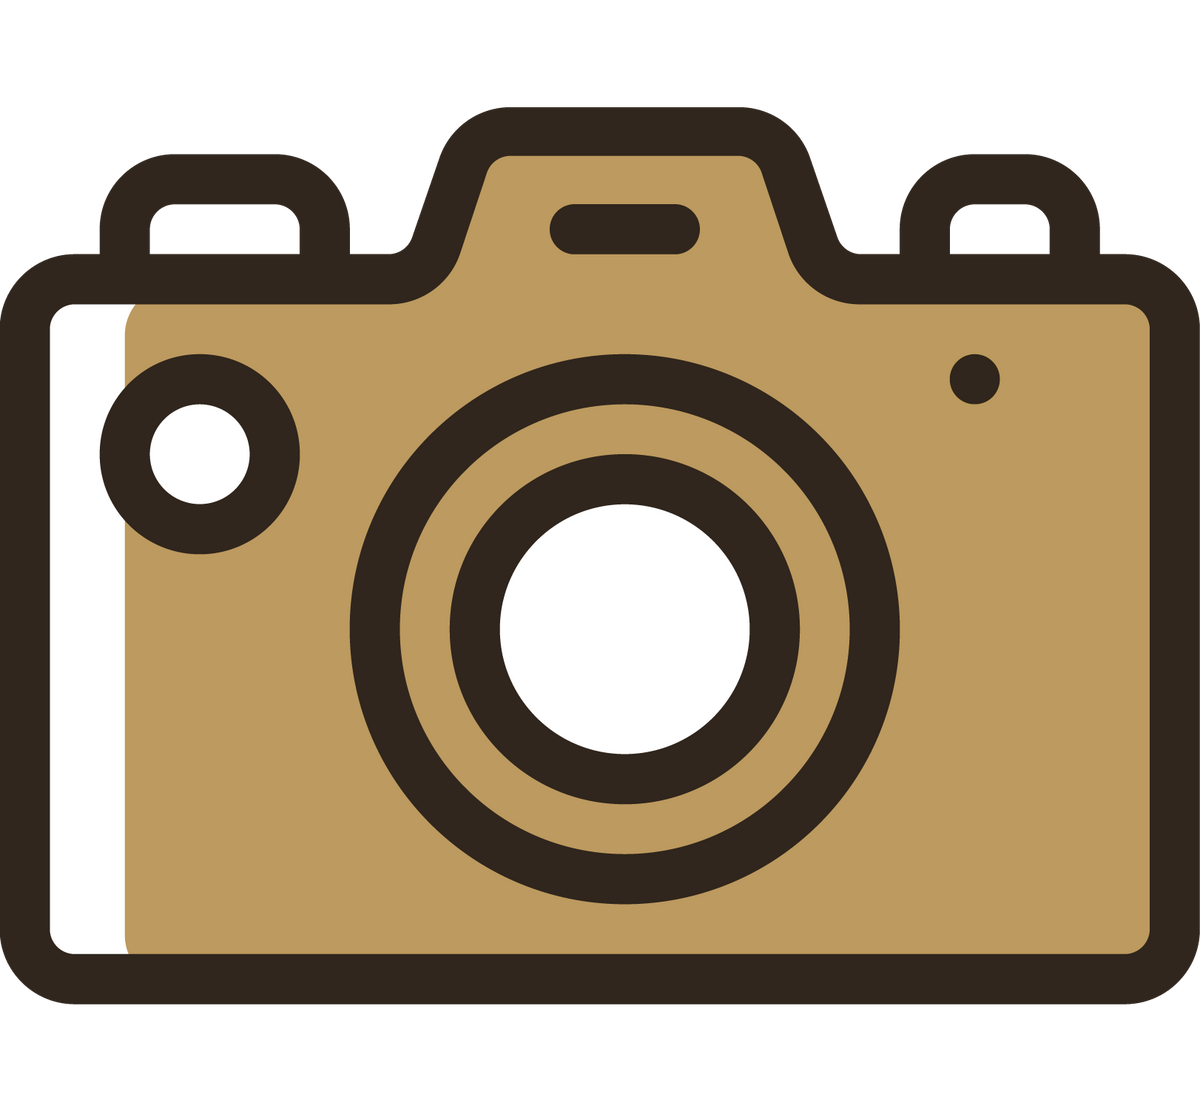 A camera icon